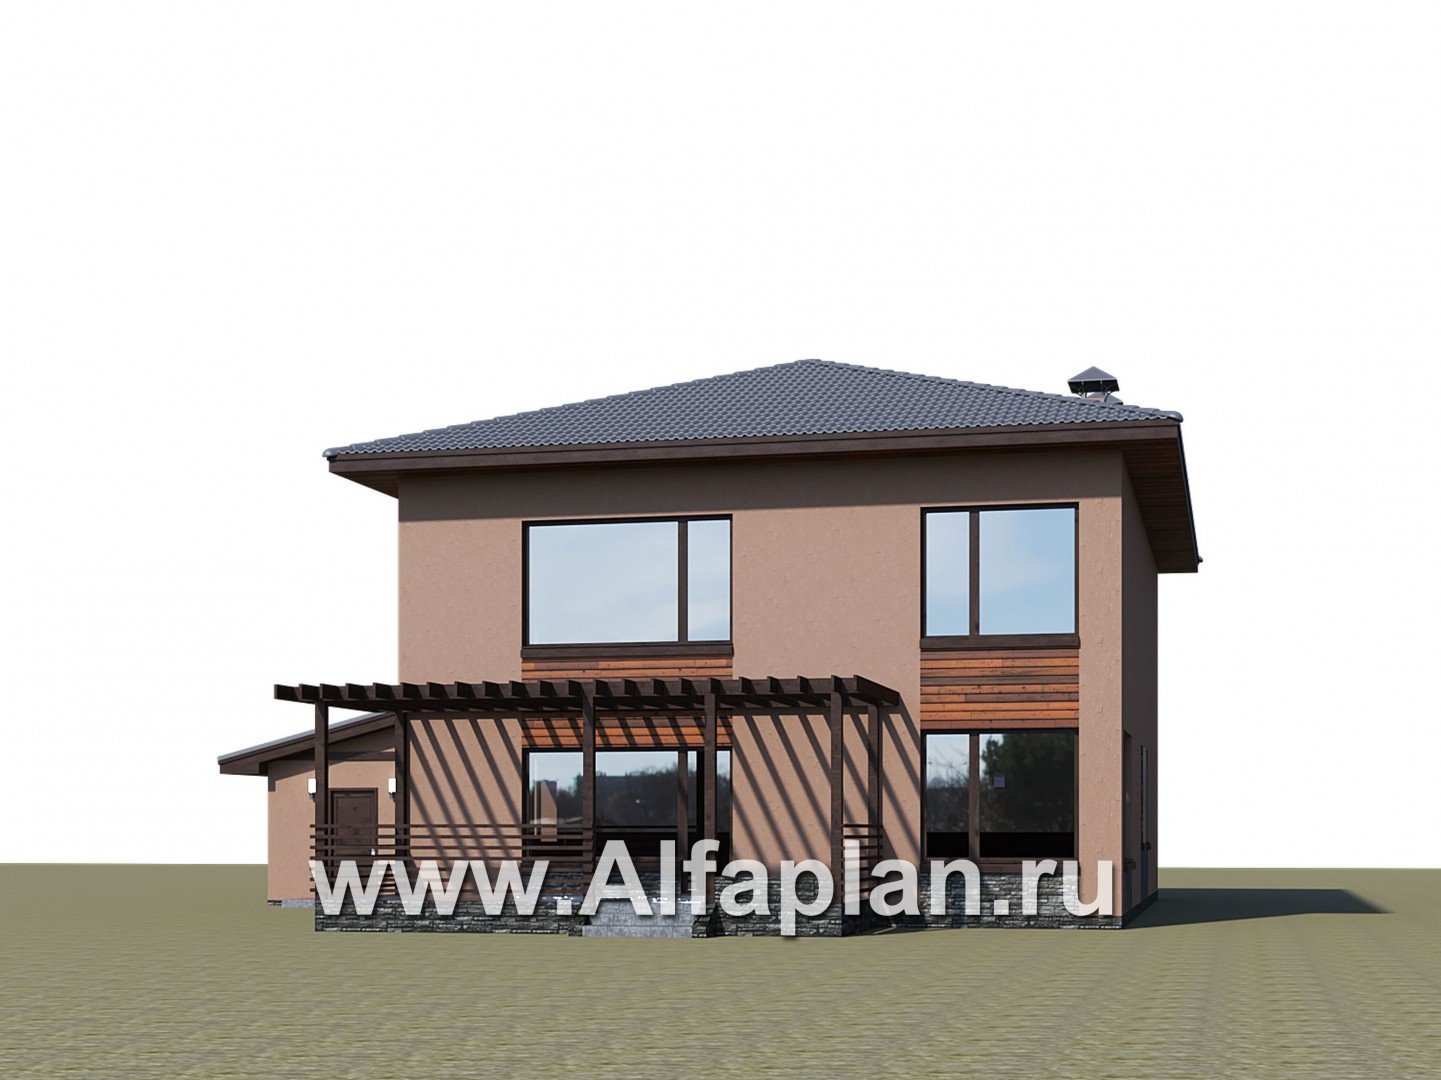 Проекты домов Альфаплан - "Золотой ключик" - план дома, где все спальни с душевыми - дополнительное изображение №2